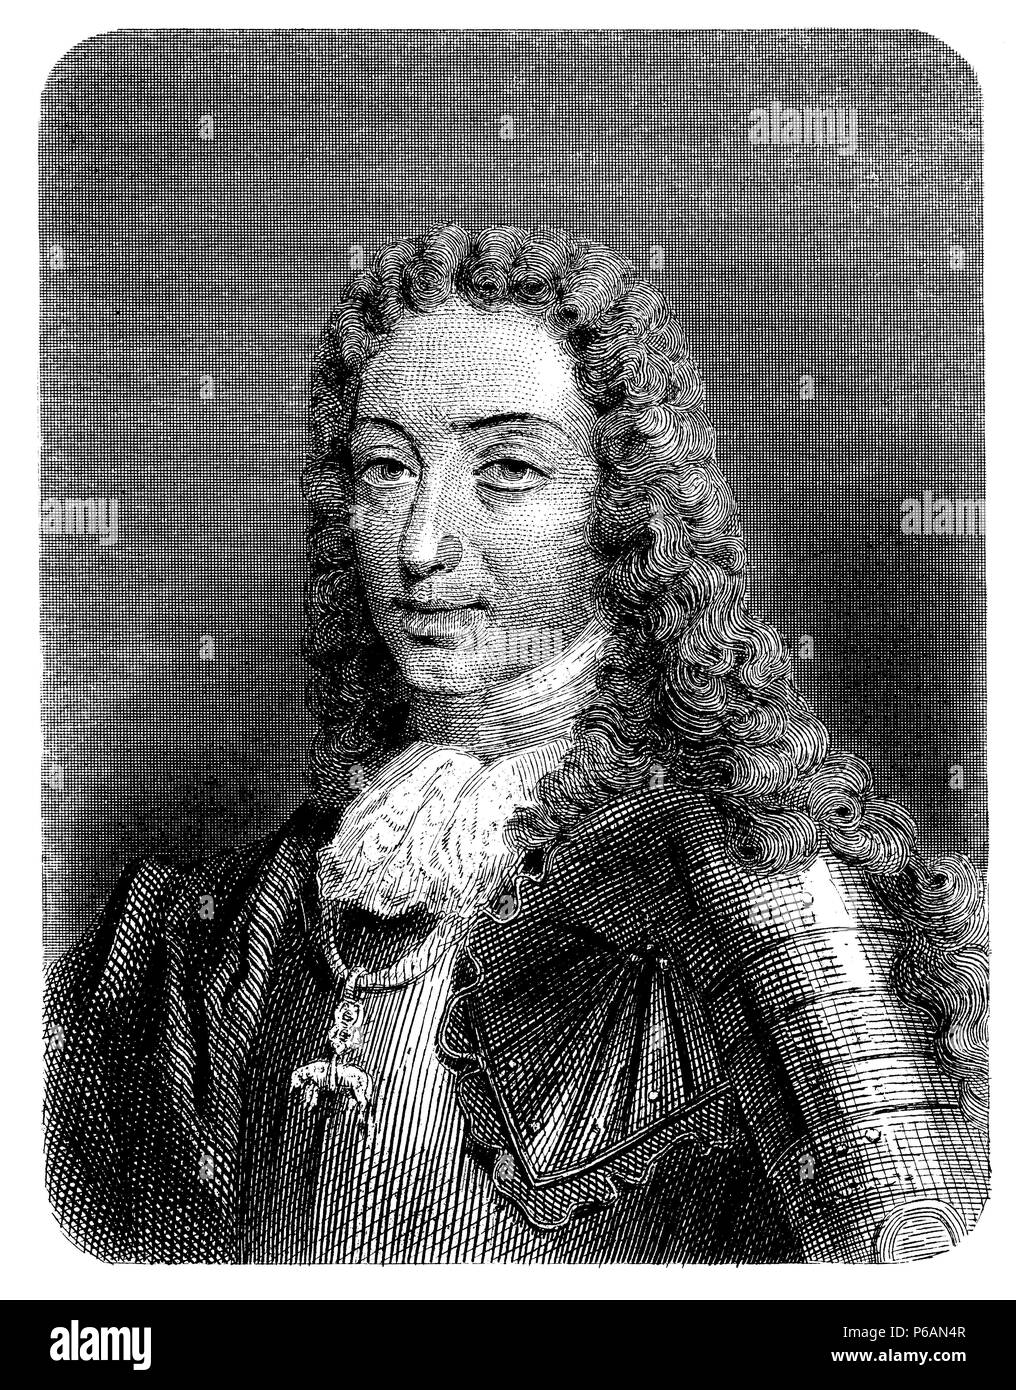 Carlos III de España (1685-1740). Archiduque de Austria, emperador del Sacro Imperio Germánico. Pretendiente al trono de España durante la guerra de Sucesión. Stock Photo